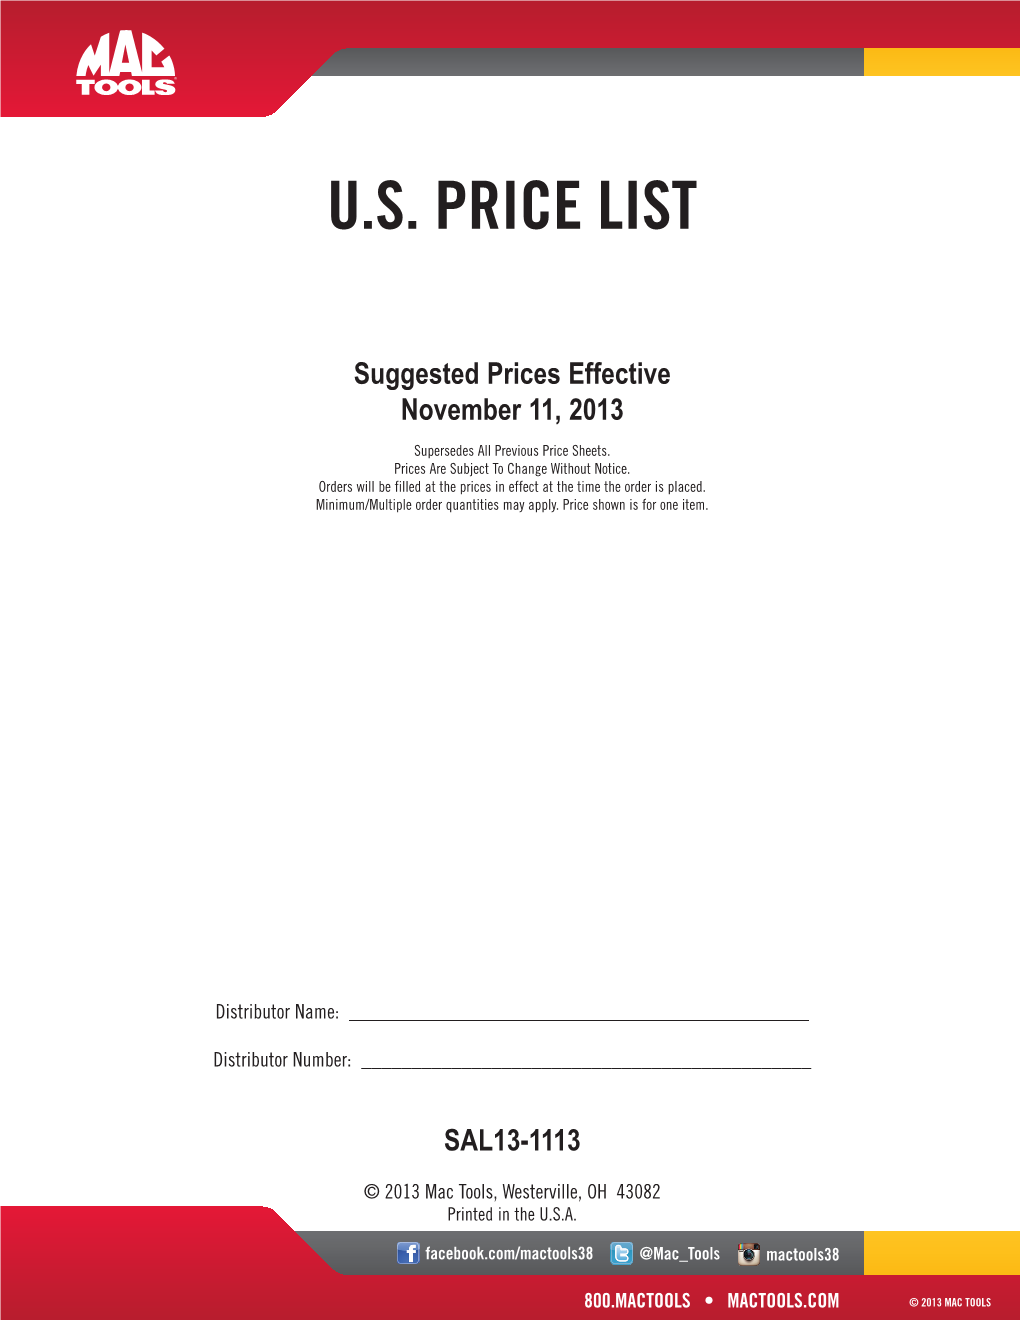 U.S. Price List